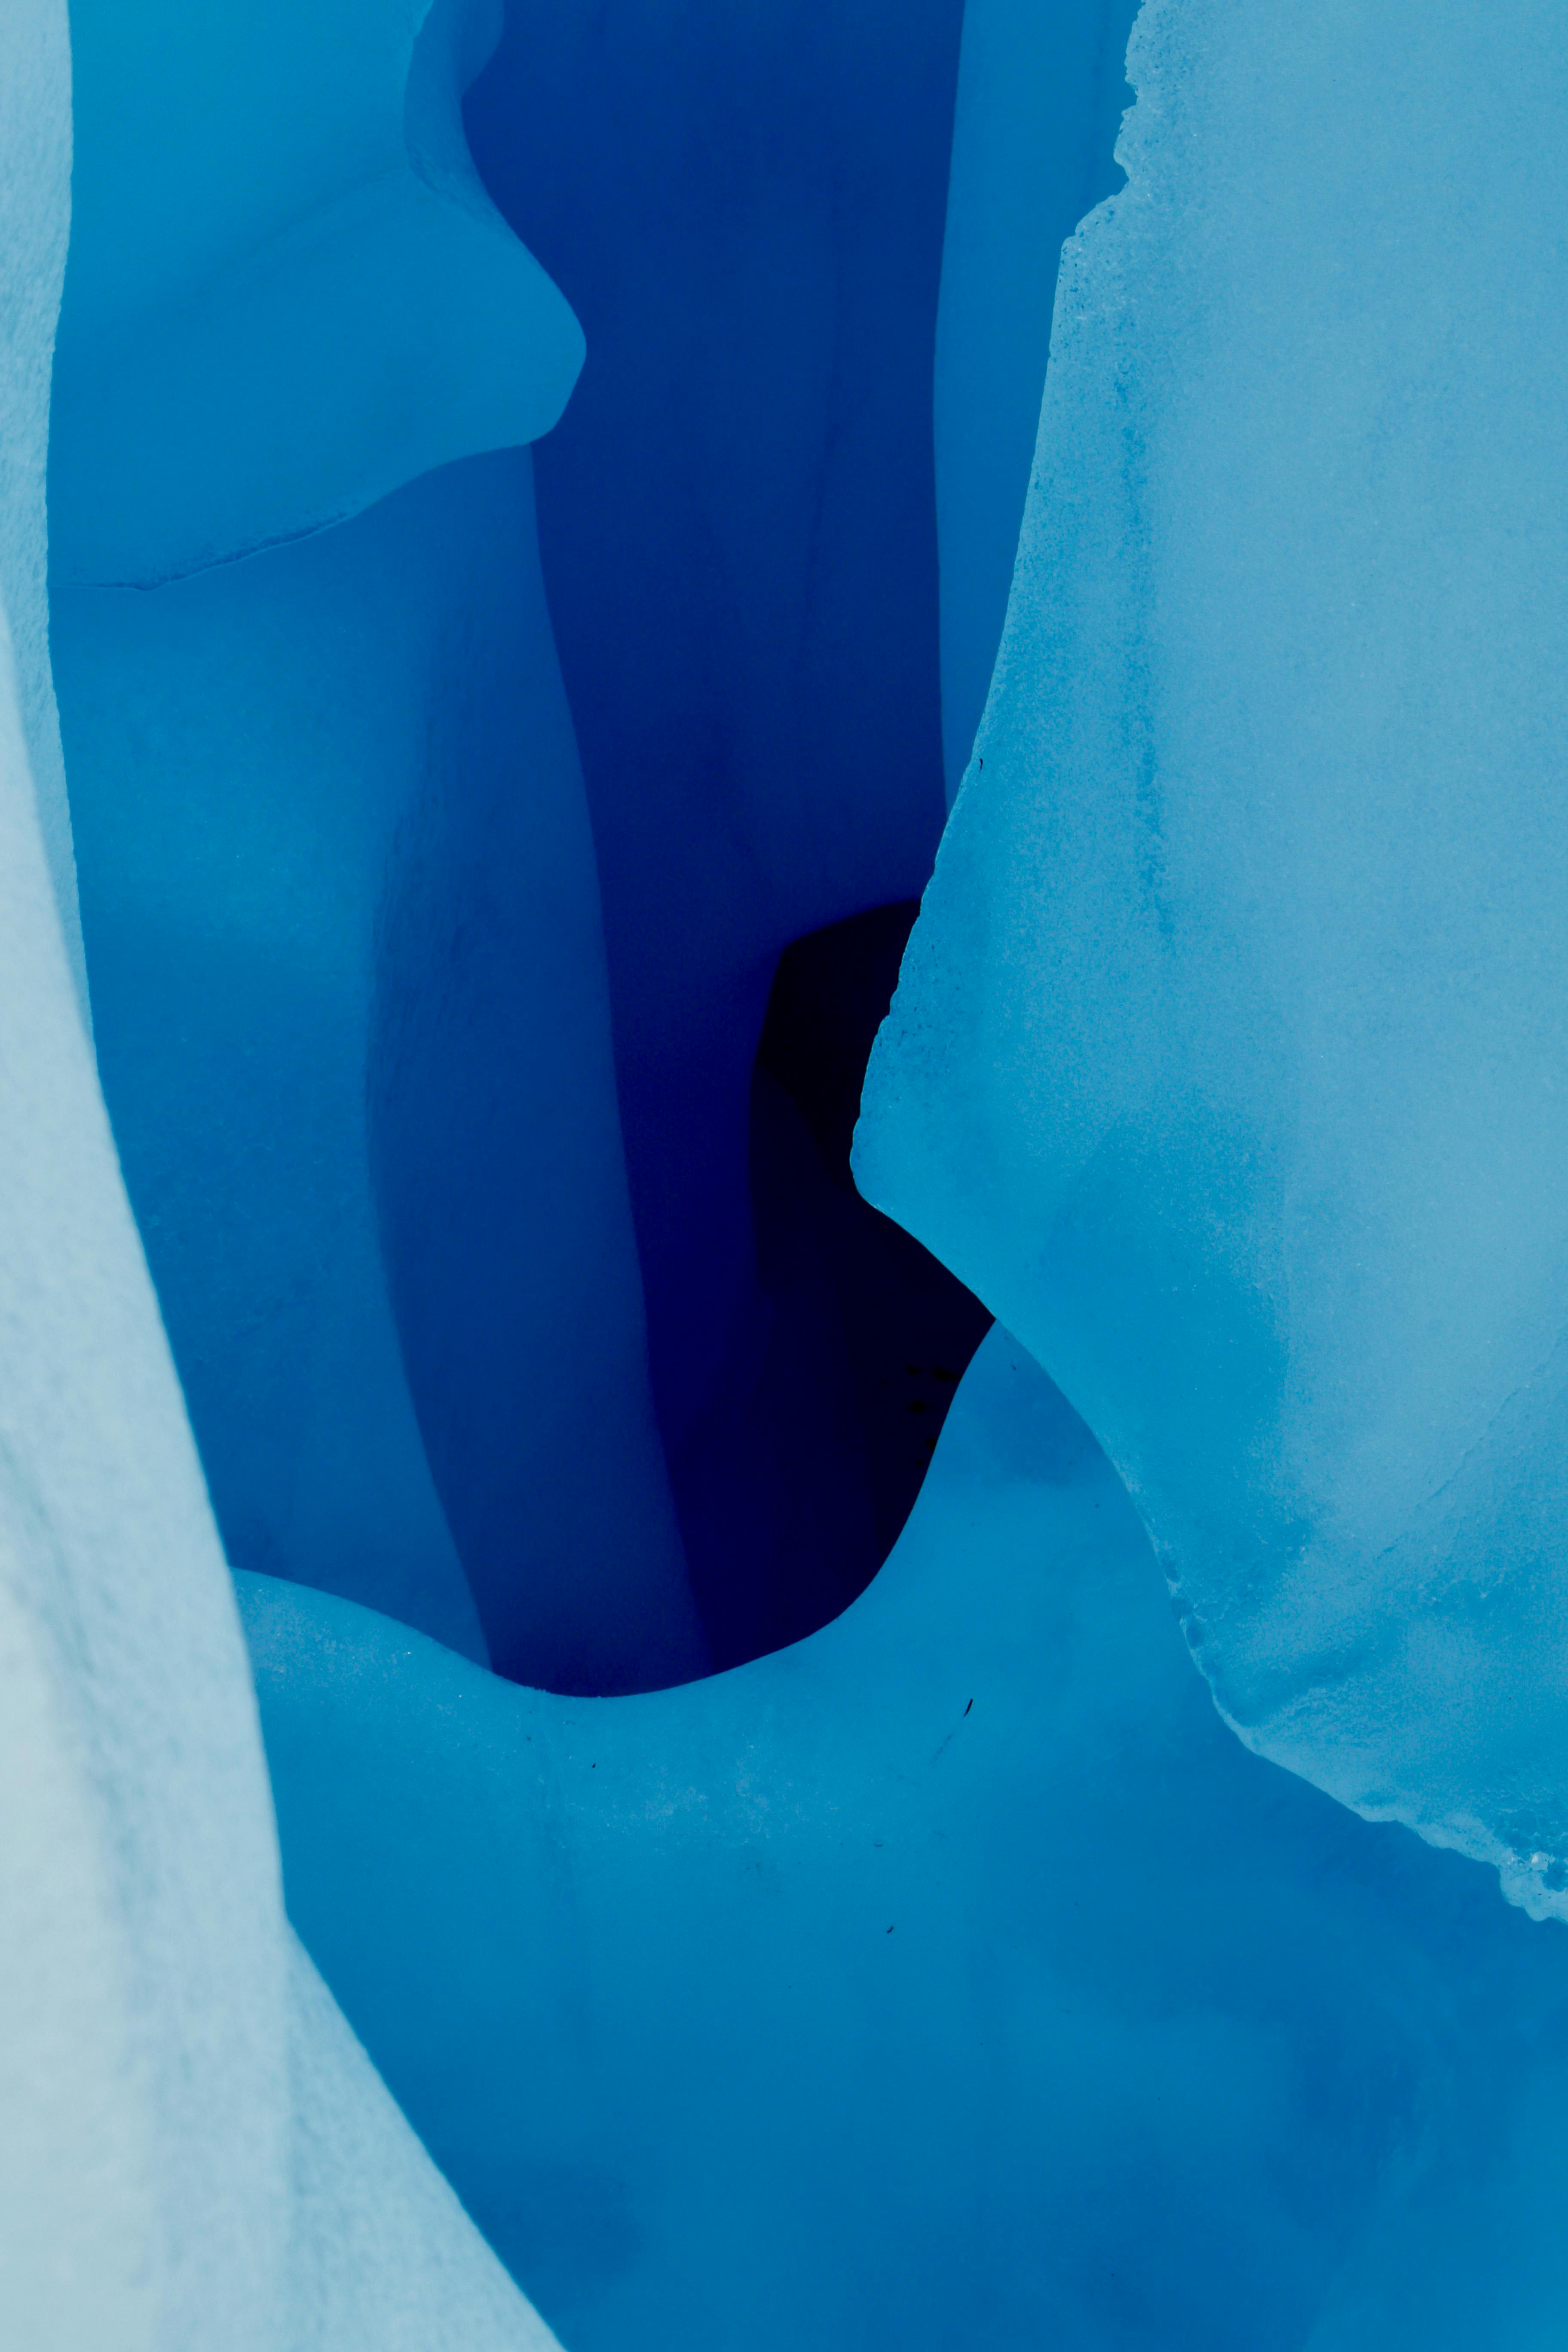 ニュージーランド 氷 氷の洞窟の無料の写真素材